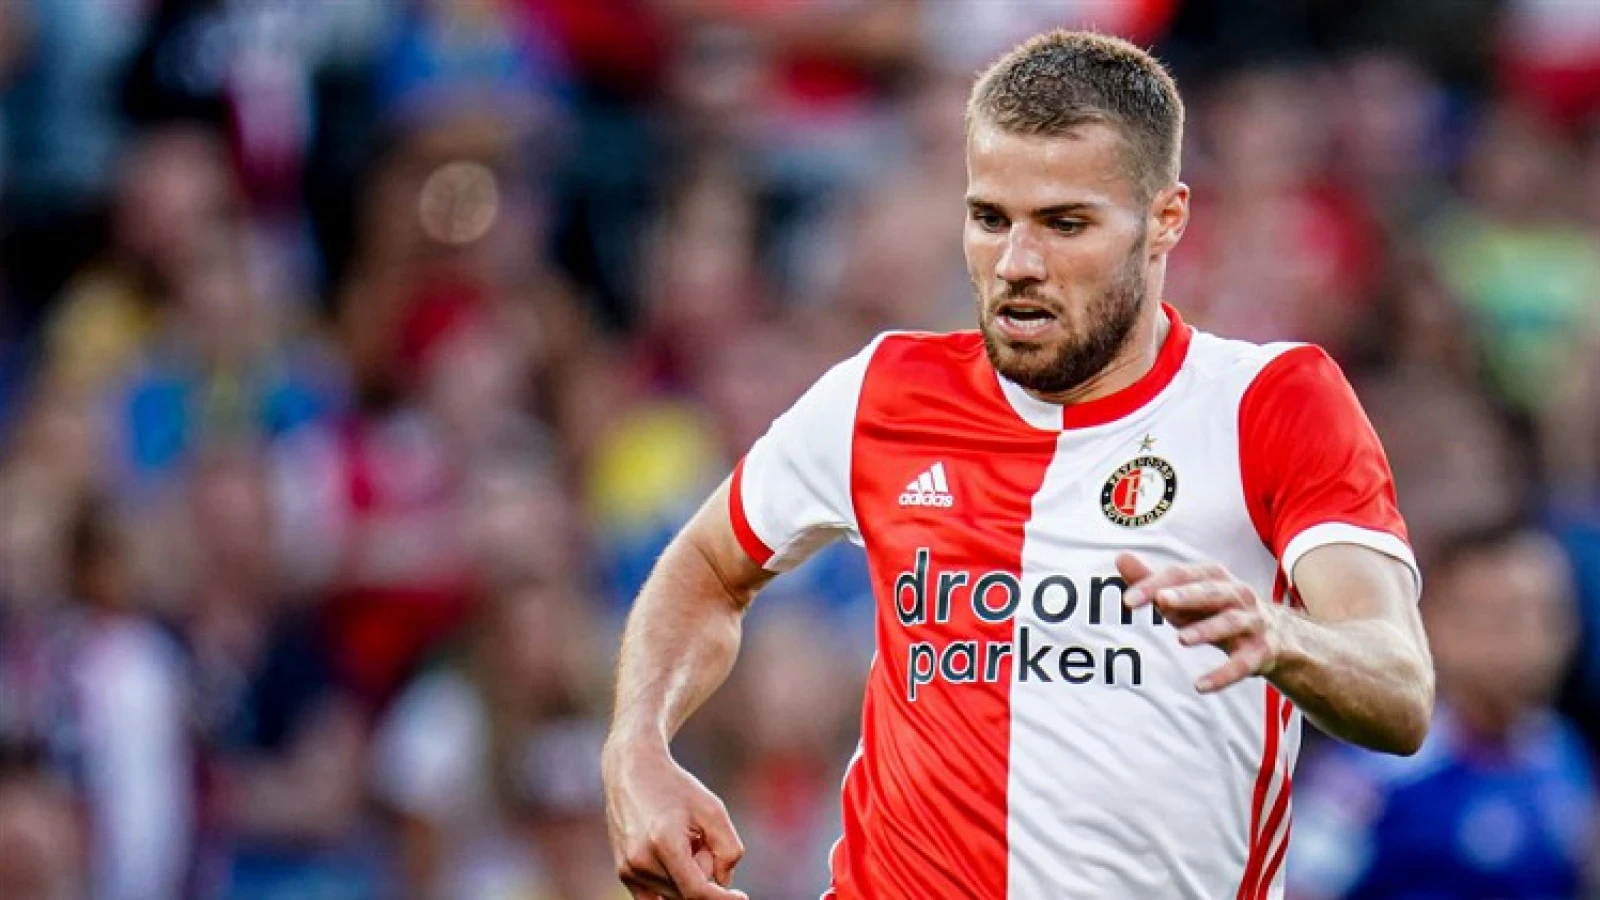 #PraatMee | Wordt Bart Nieuwkoop volgend seizoen de vaste rechtsback van Feyenoord?